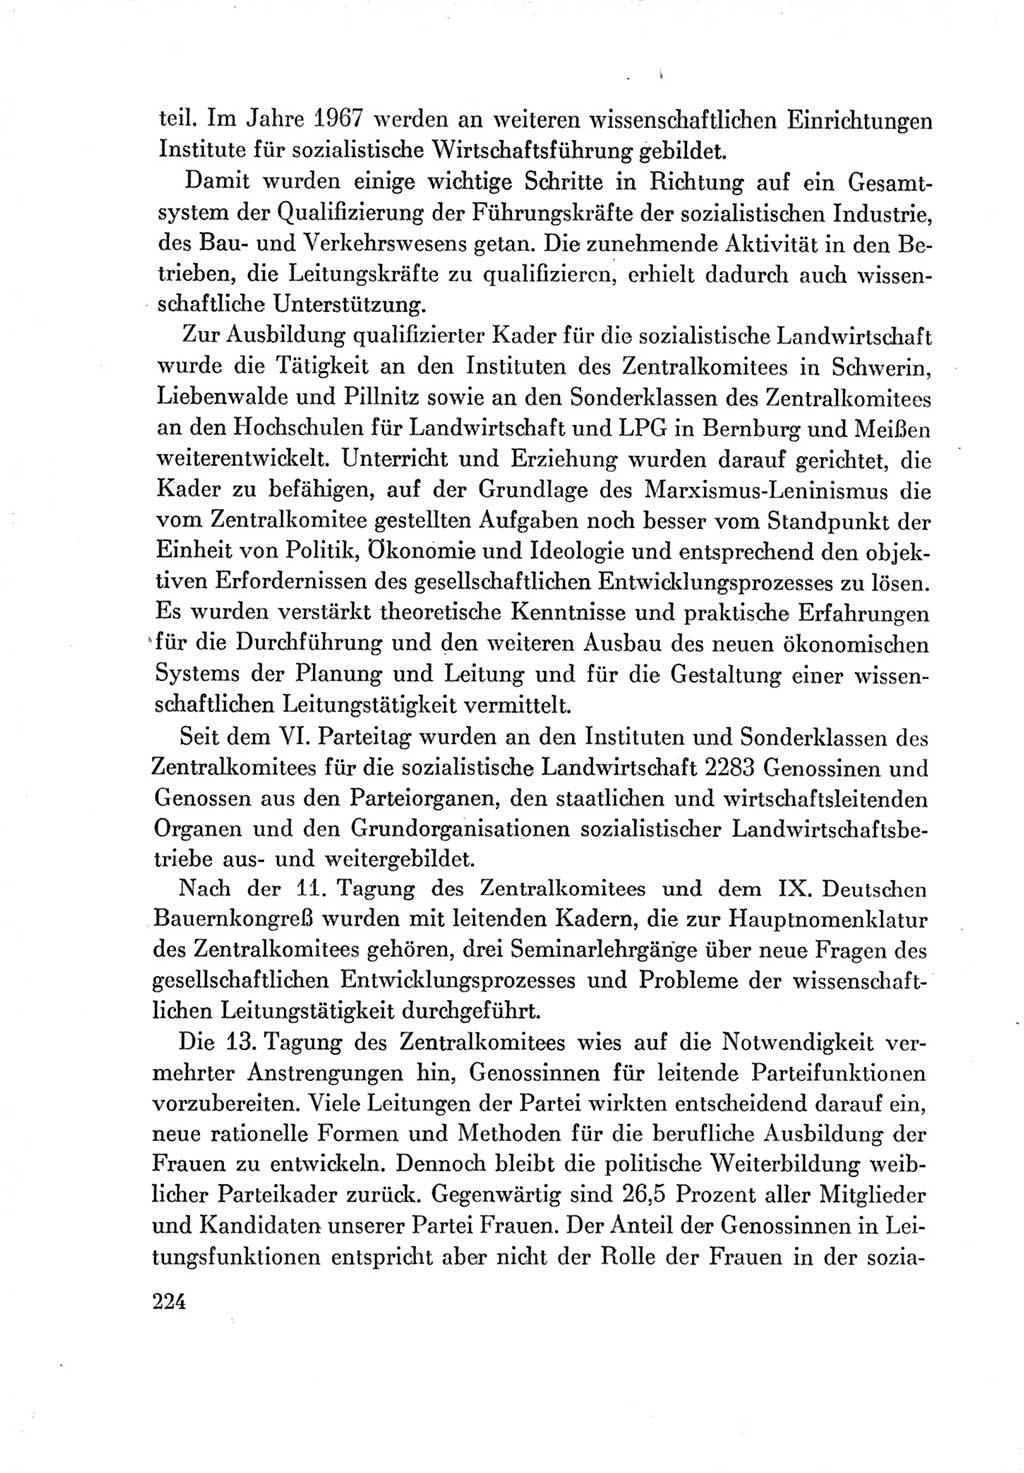 Protokoll der Verhandlungen des Ⅶ. Parteitages der Sozialistischen Einheitspartei Deutschlands (SED) [Deutsche Demokratische Republik (DDR)] 1967, Band Ⅳ, Seite 224 (Prot. Verh. Ⅶ. PT SED DDR 1967, Bd. Ⅳ, S. 224)